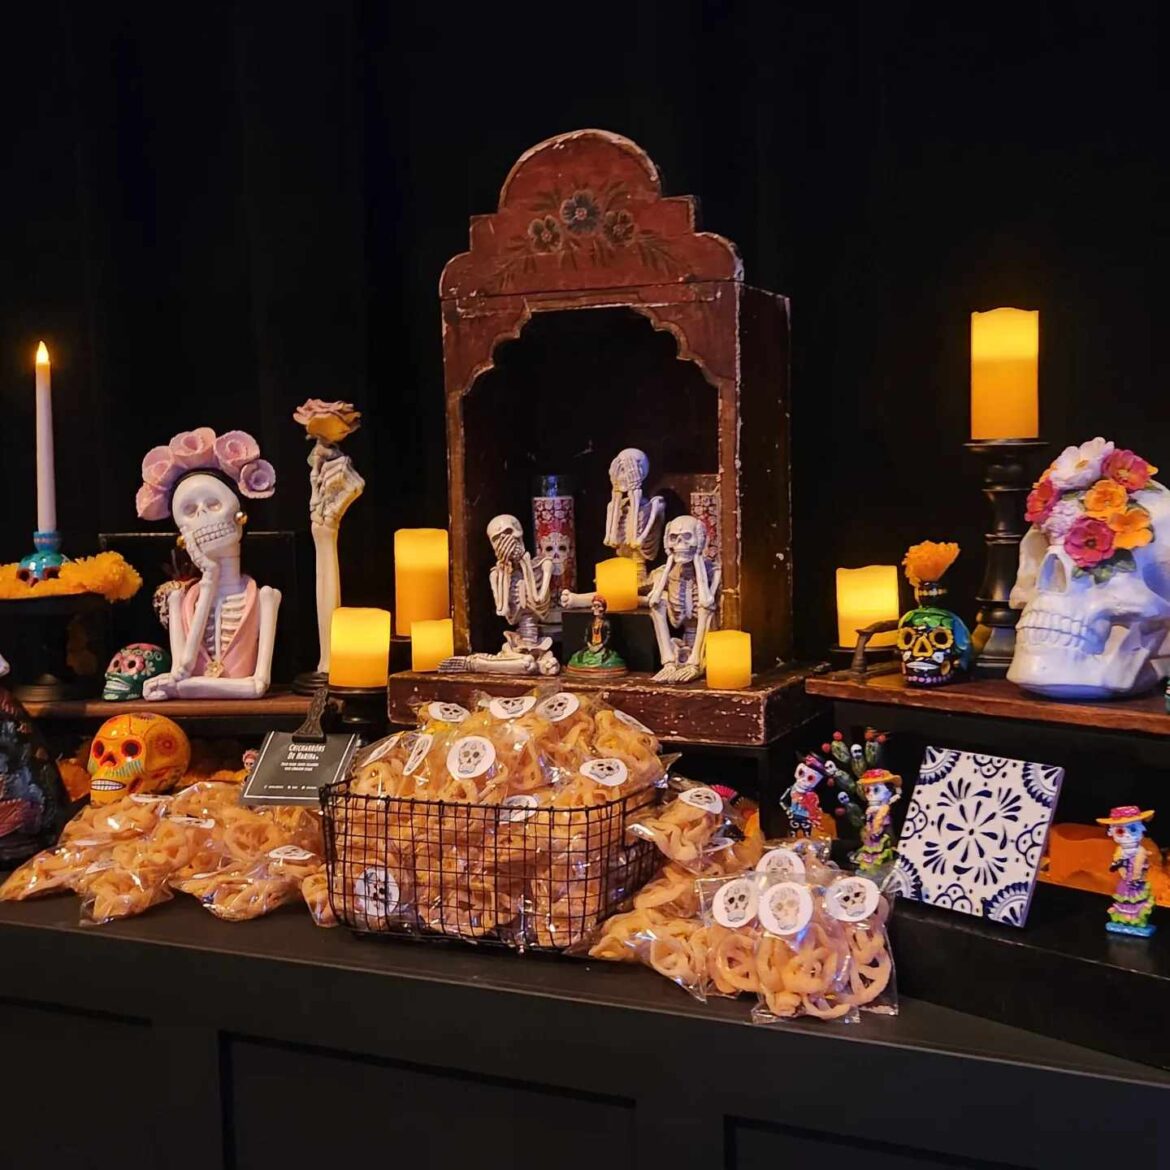 Sneak Peek at the Food & Drink Options at Halloween Horror Nights Taste of Terror